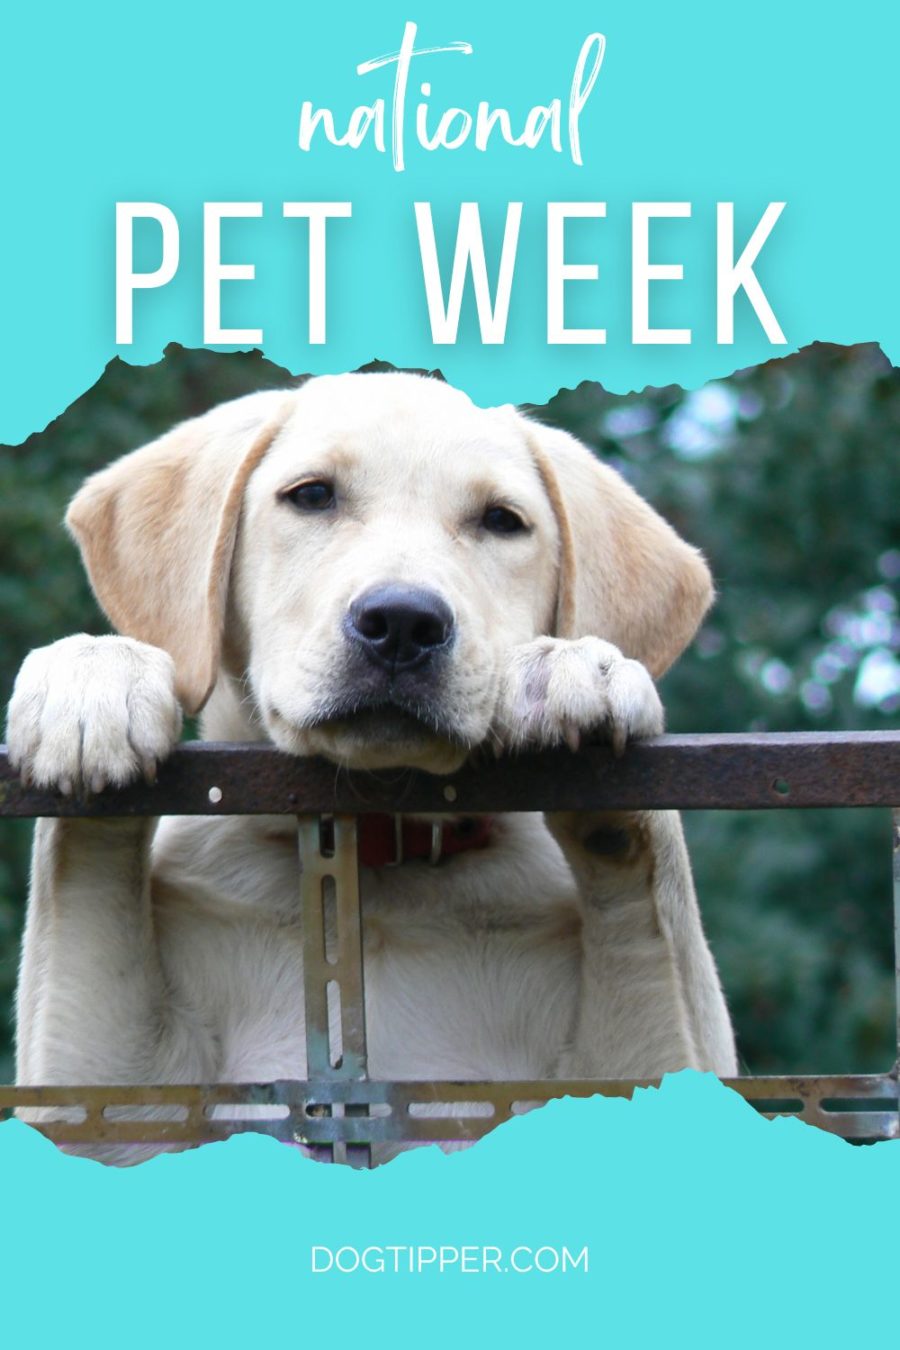 National Pet Week - first full week in May